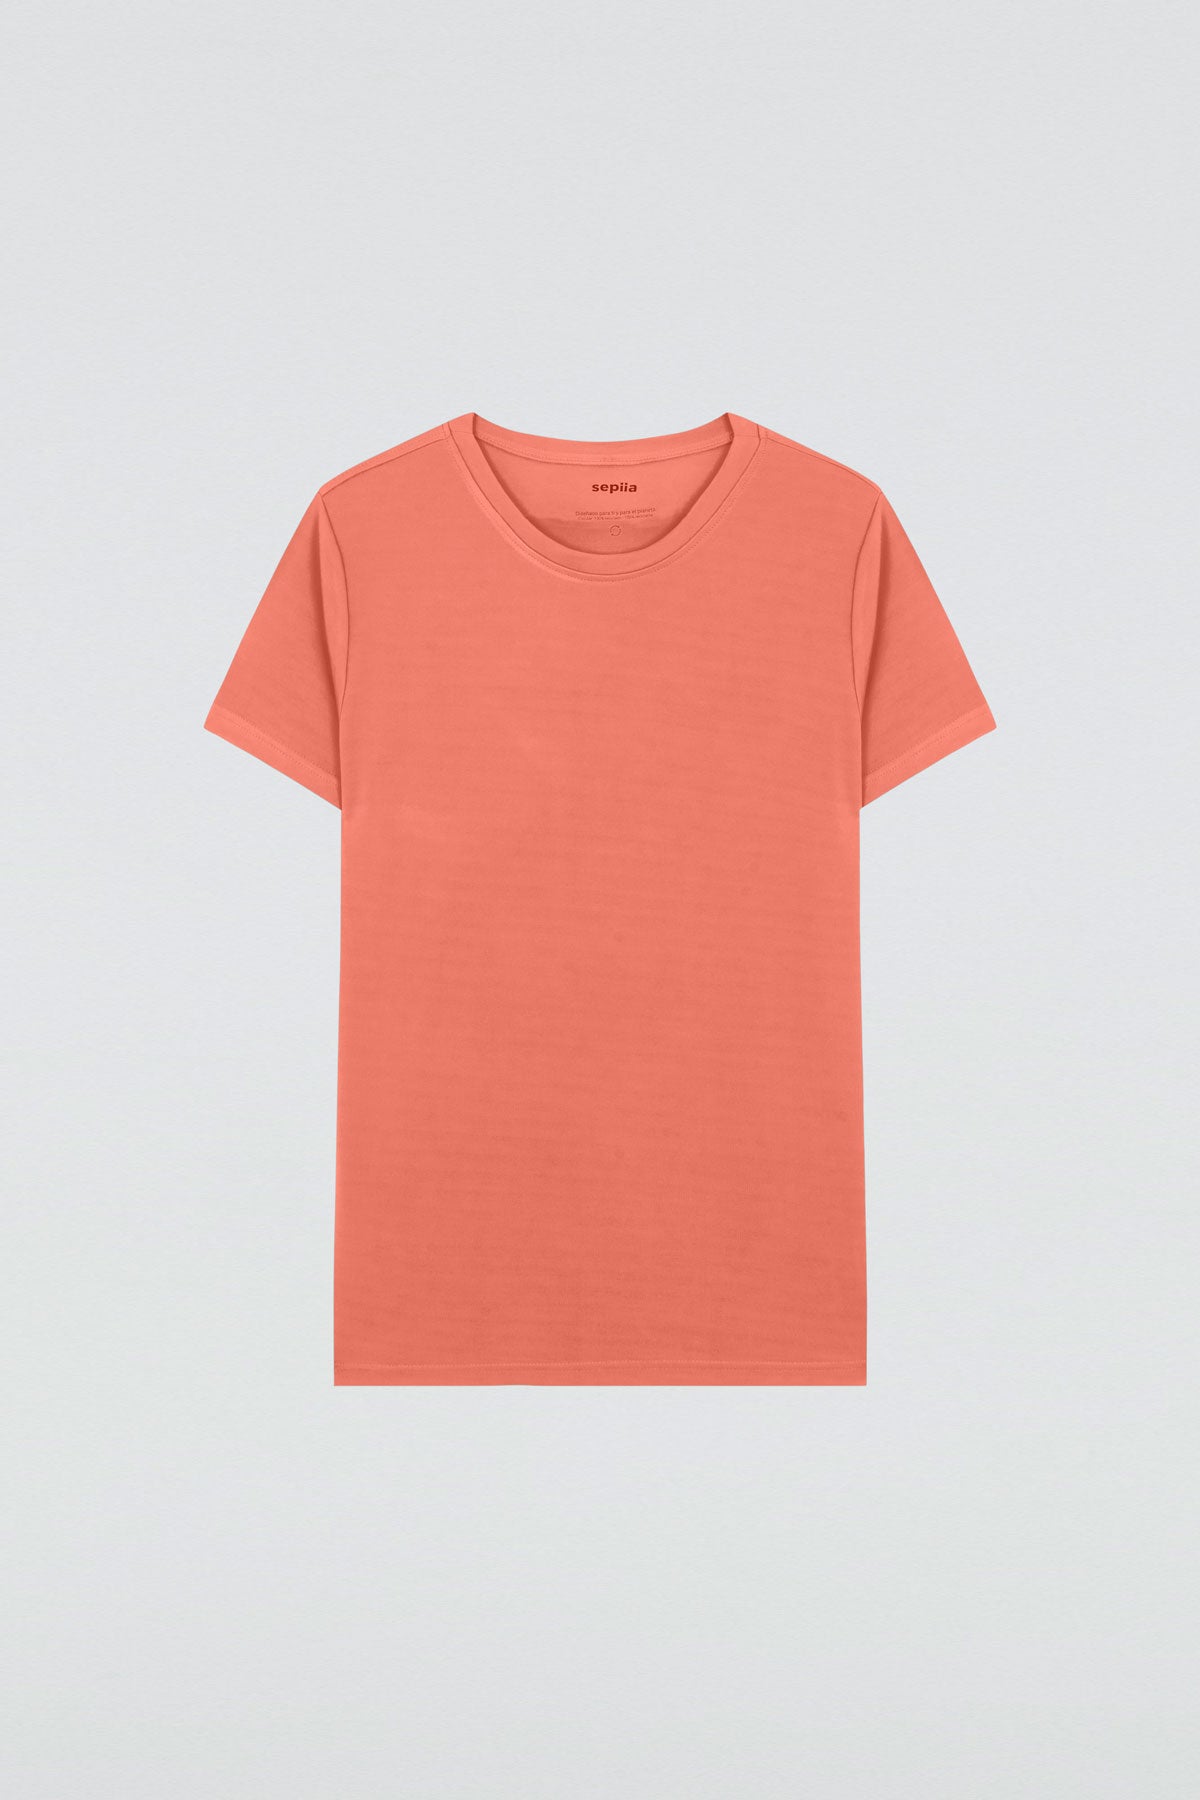 Camiseta básica de mujer coral de manga corta, antiarrugas y antimanchas. Foto prenda en plano